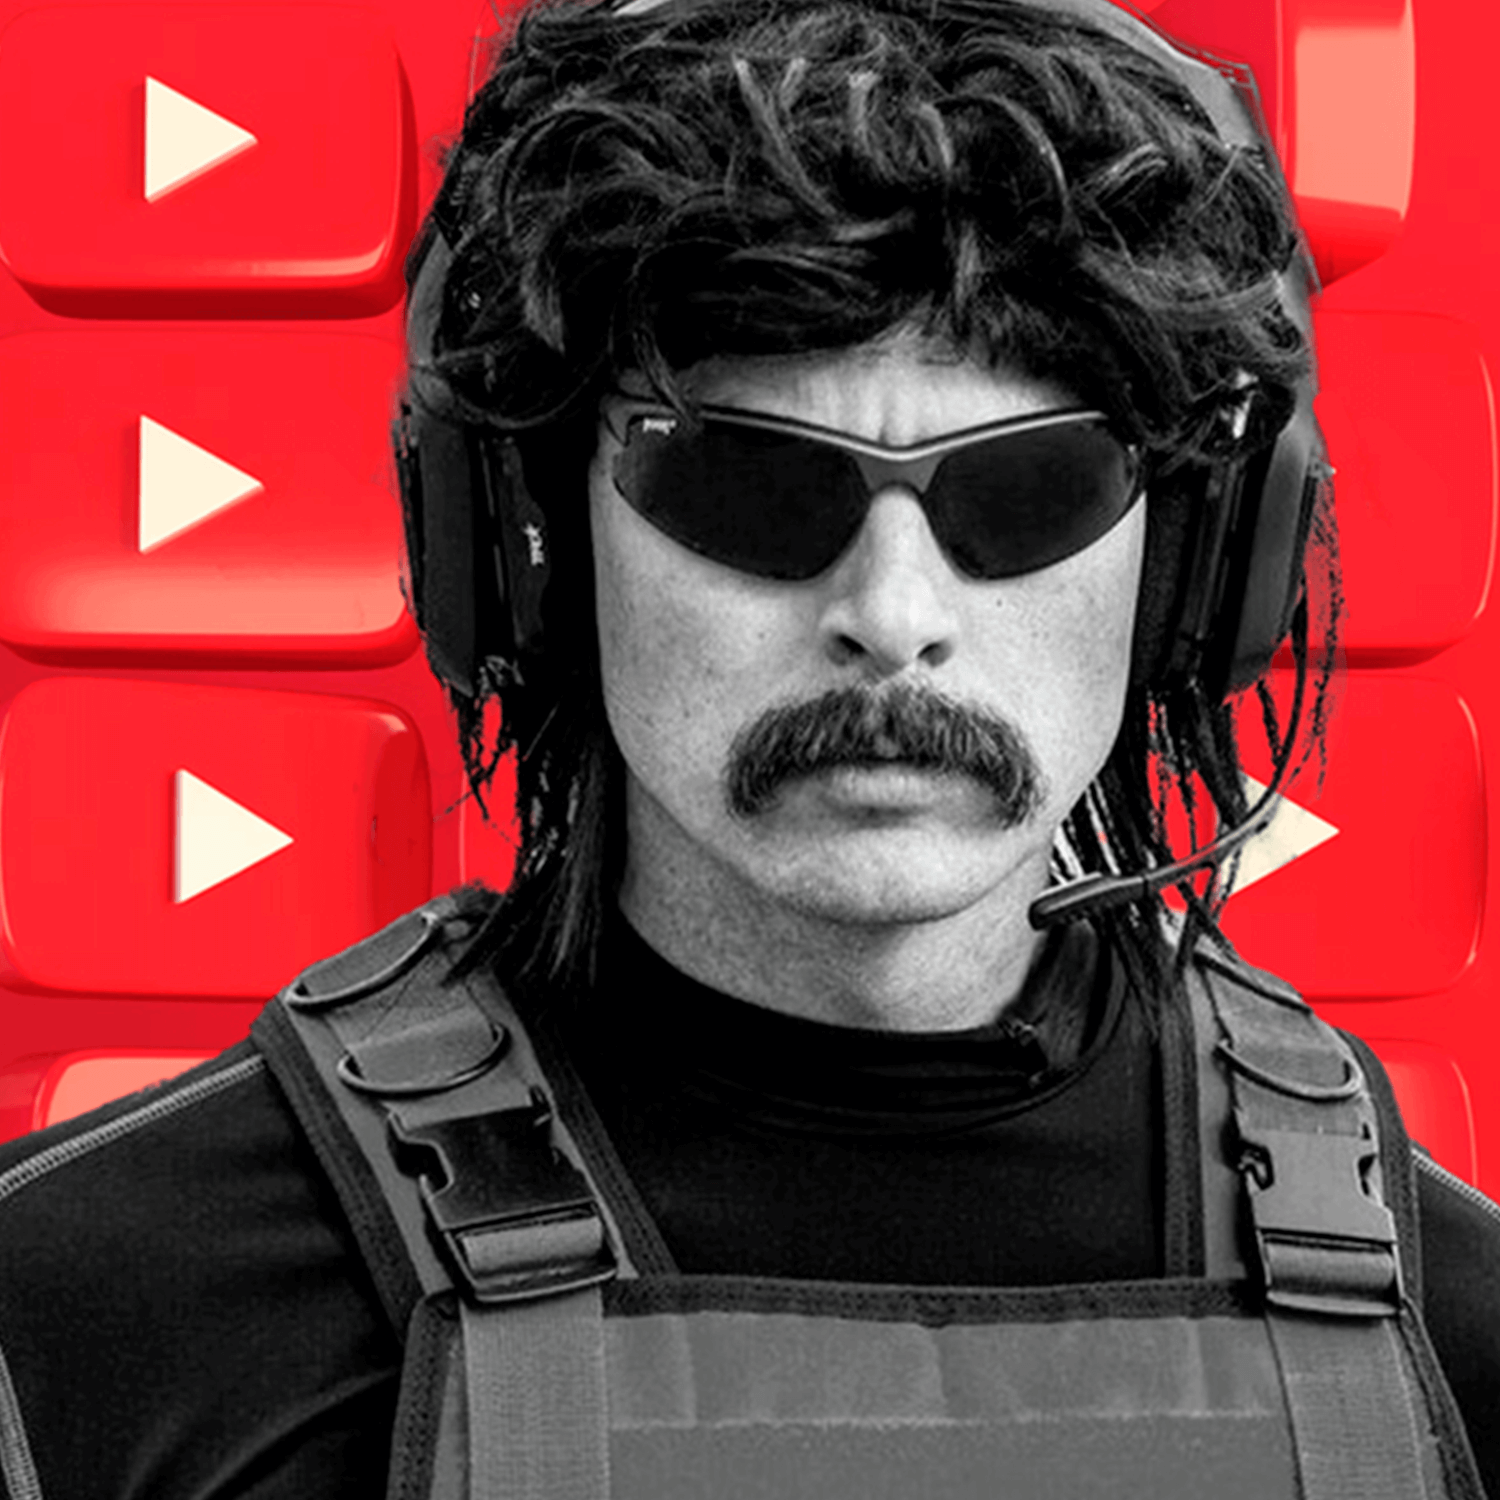 ¡YouTube suspende la monetización en el canal de Dr. Disrespect!